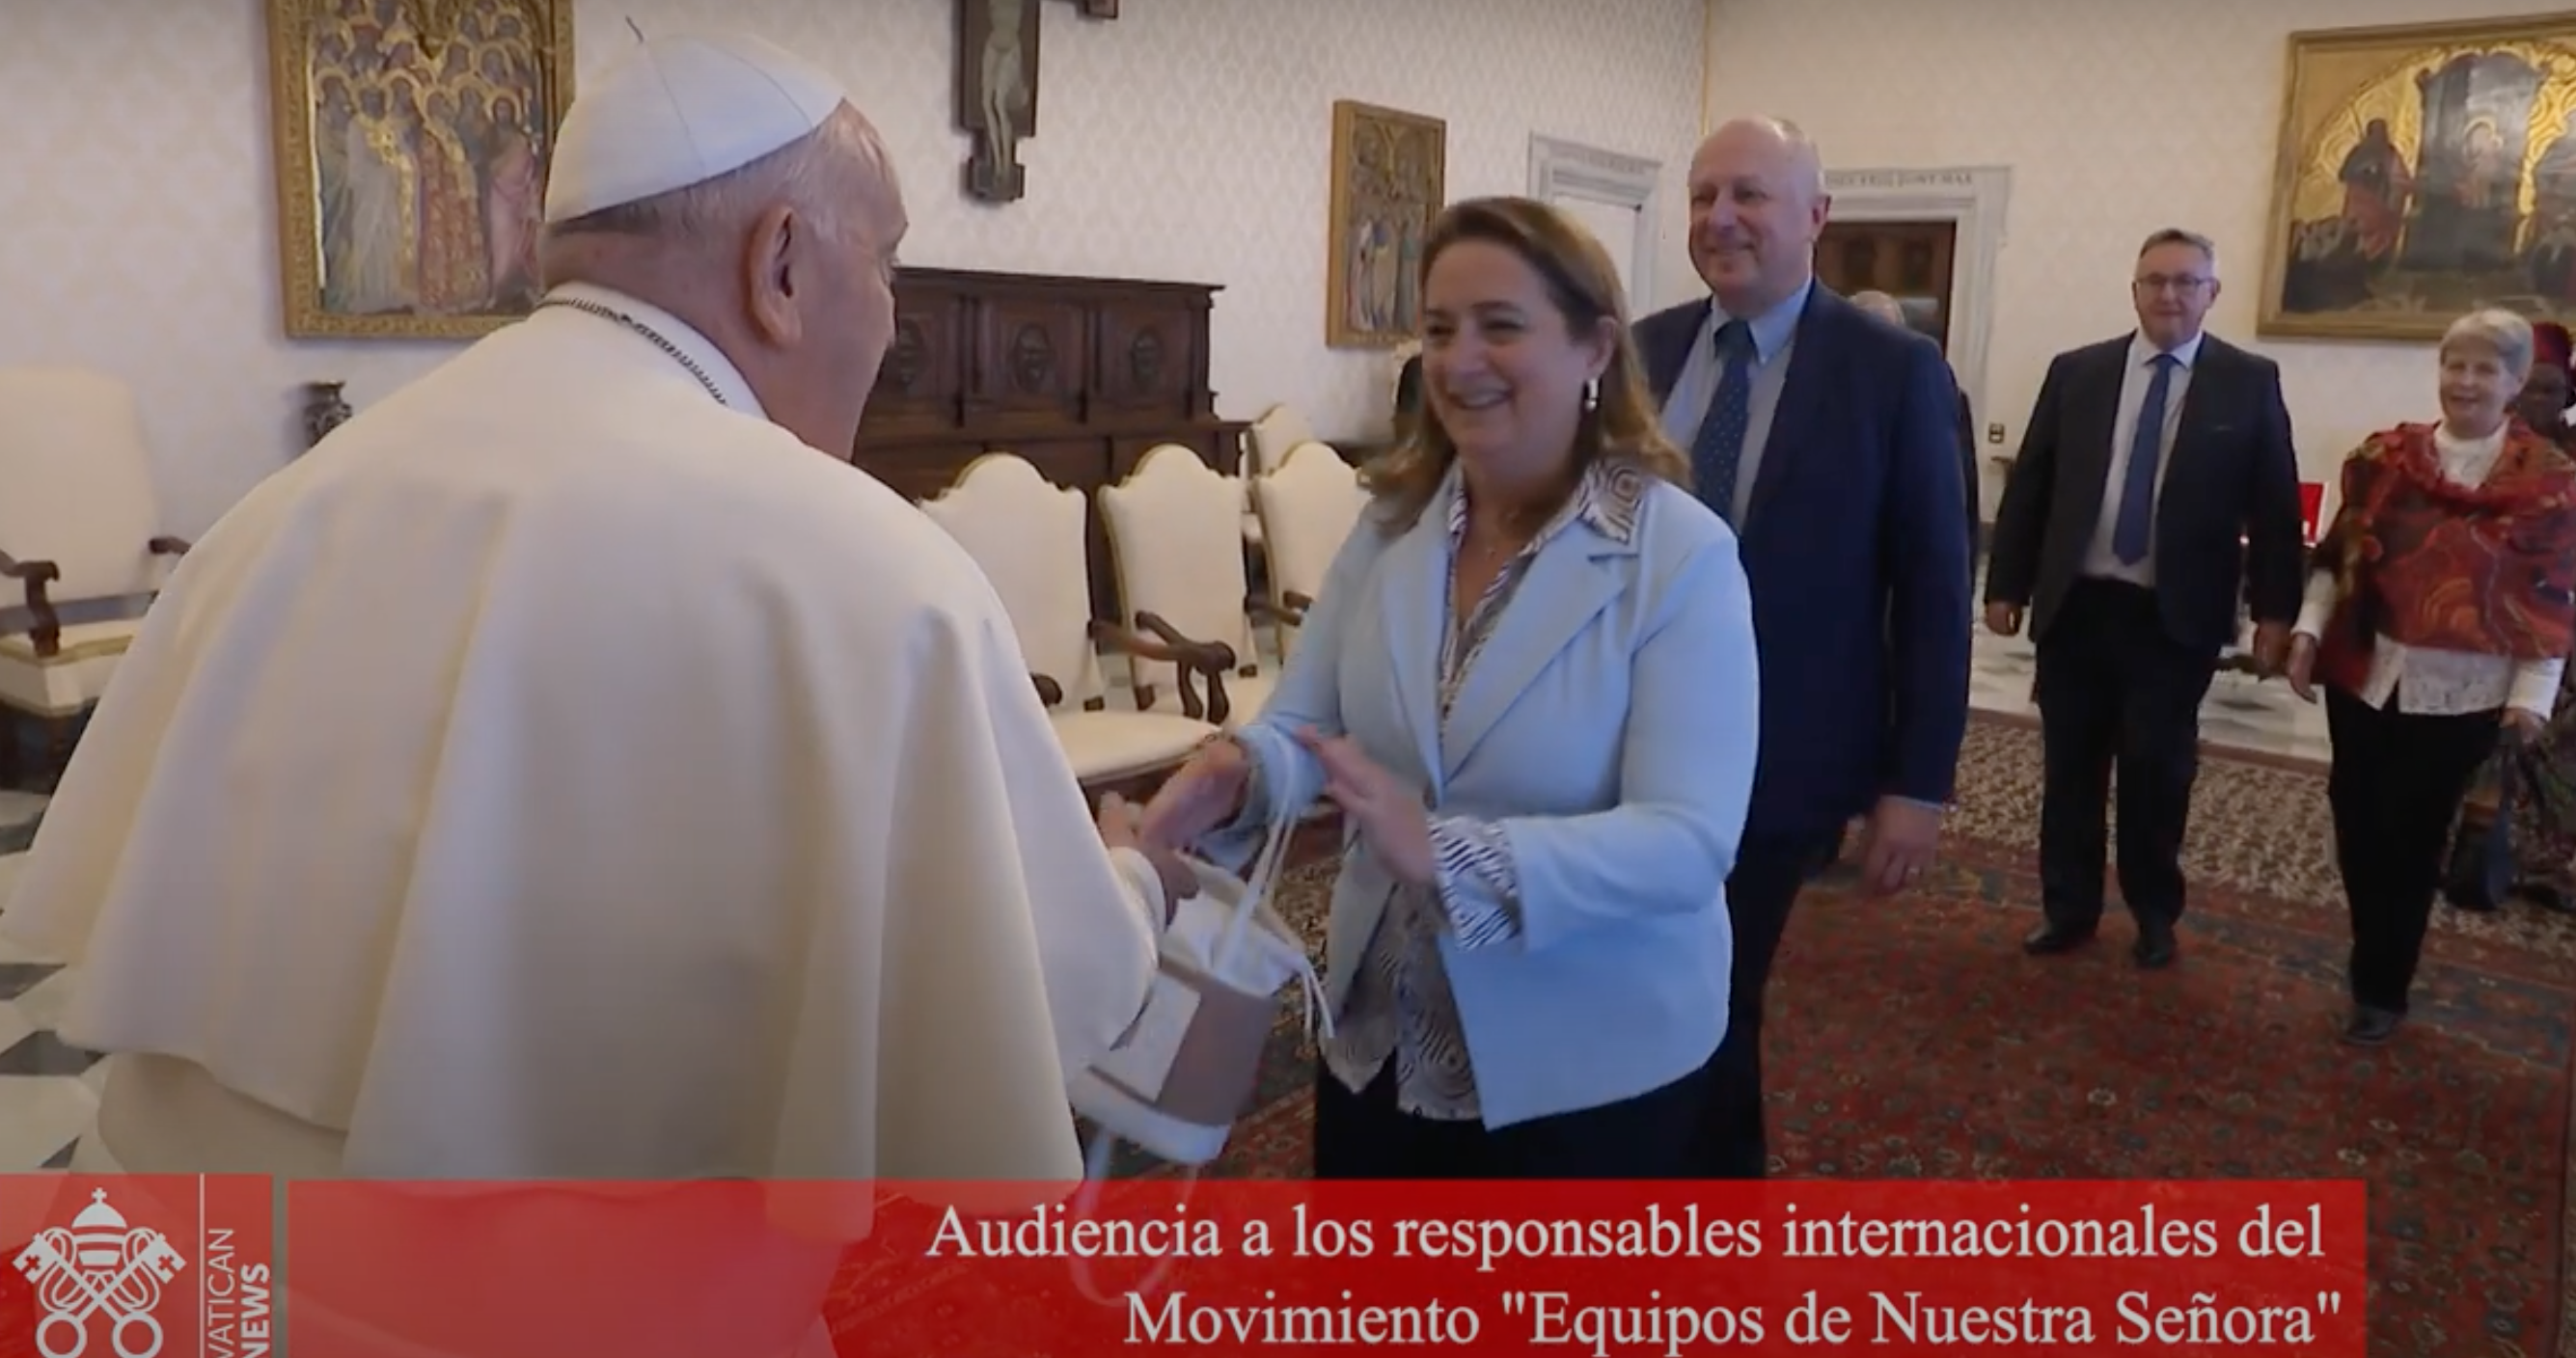 El Papa Francisco con los responsables internacionales del Movimiento "Equipos de Nuestra Señora".